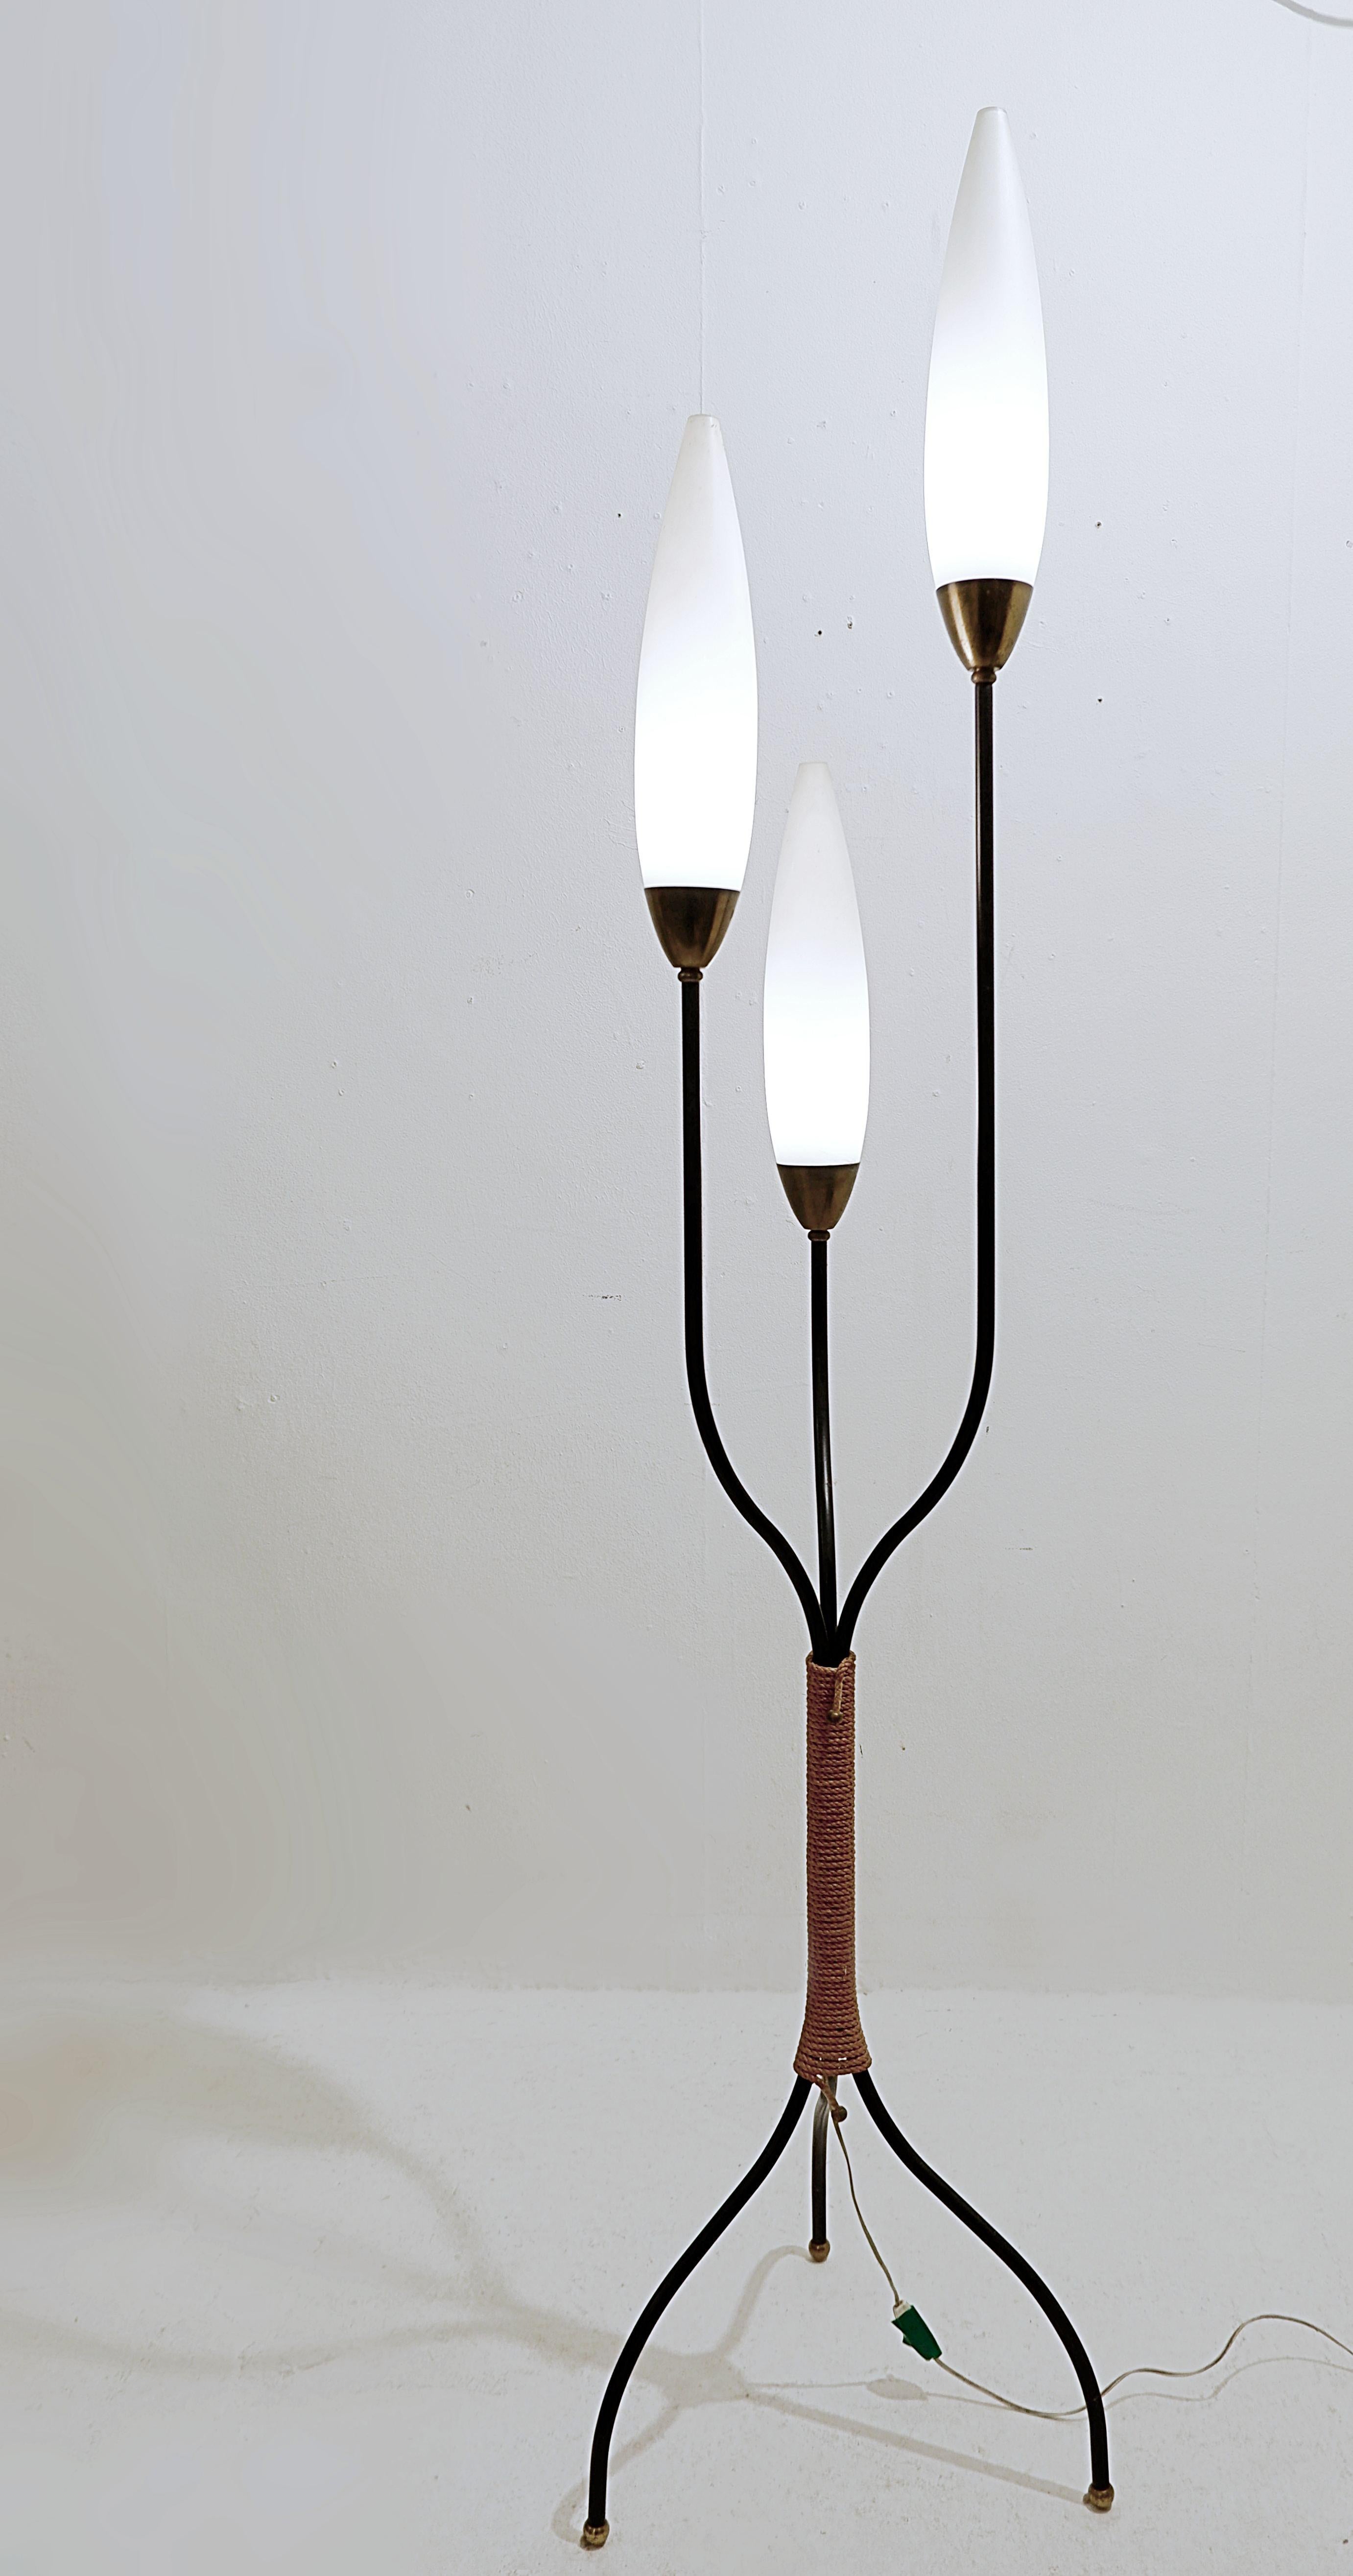 Lampadaire tripode du milieu du siècle à trois lumières de Maison Lunel - 1950s.